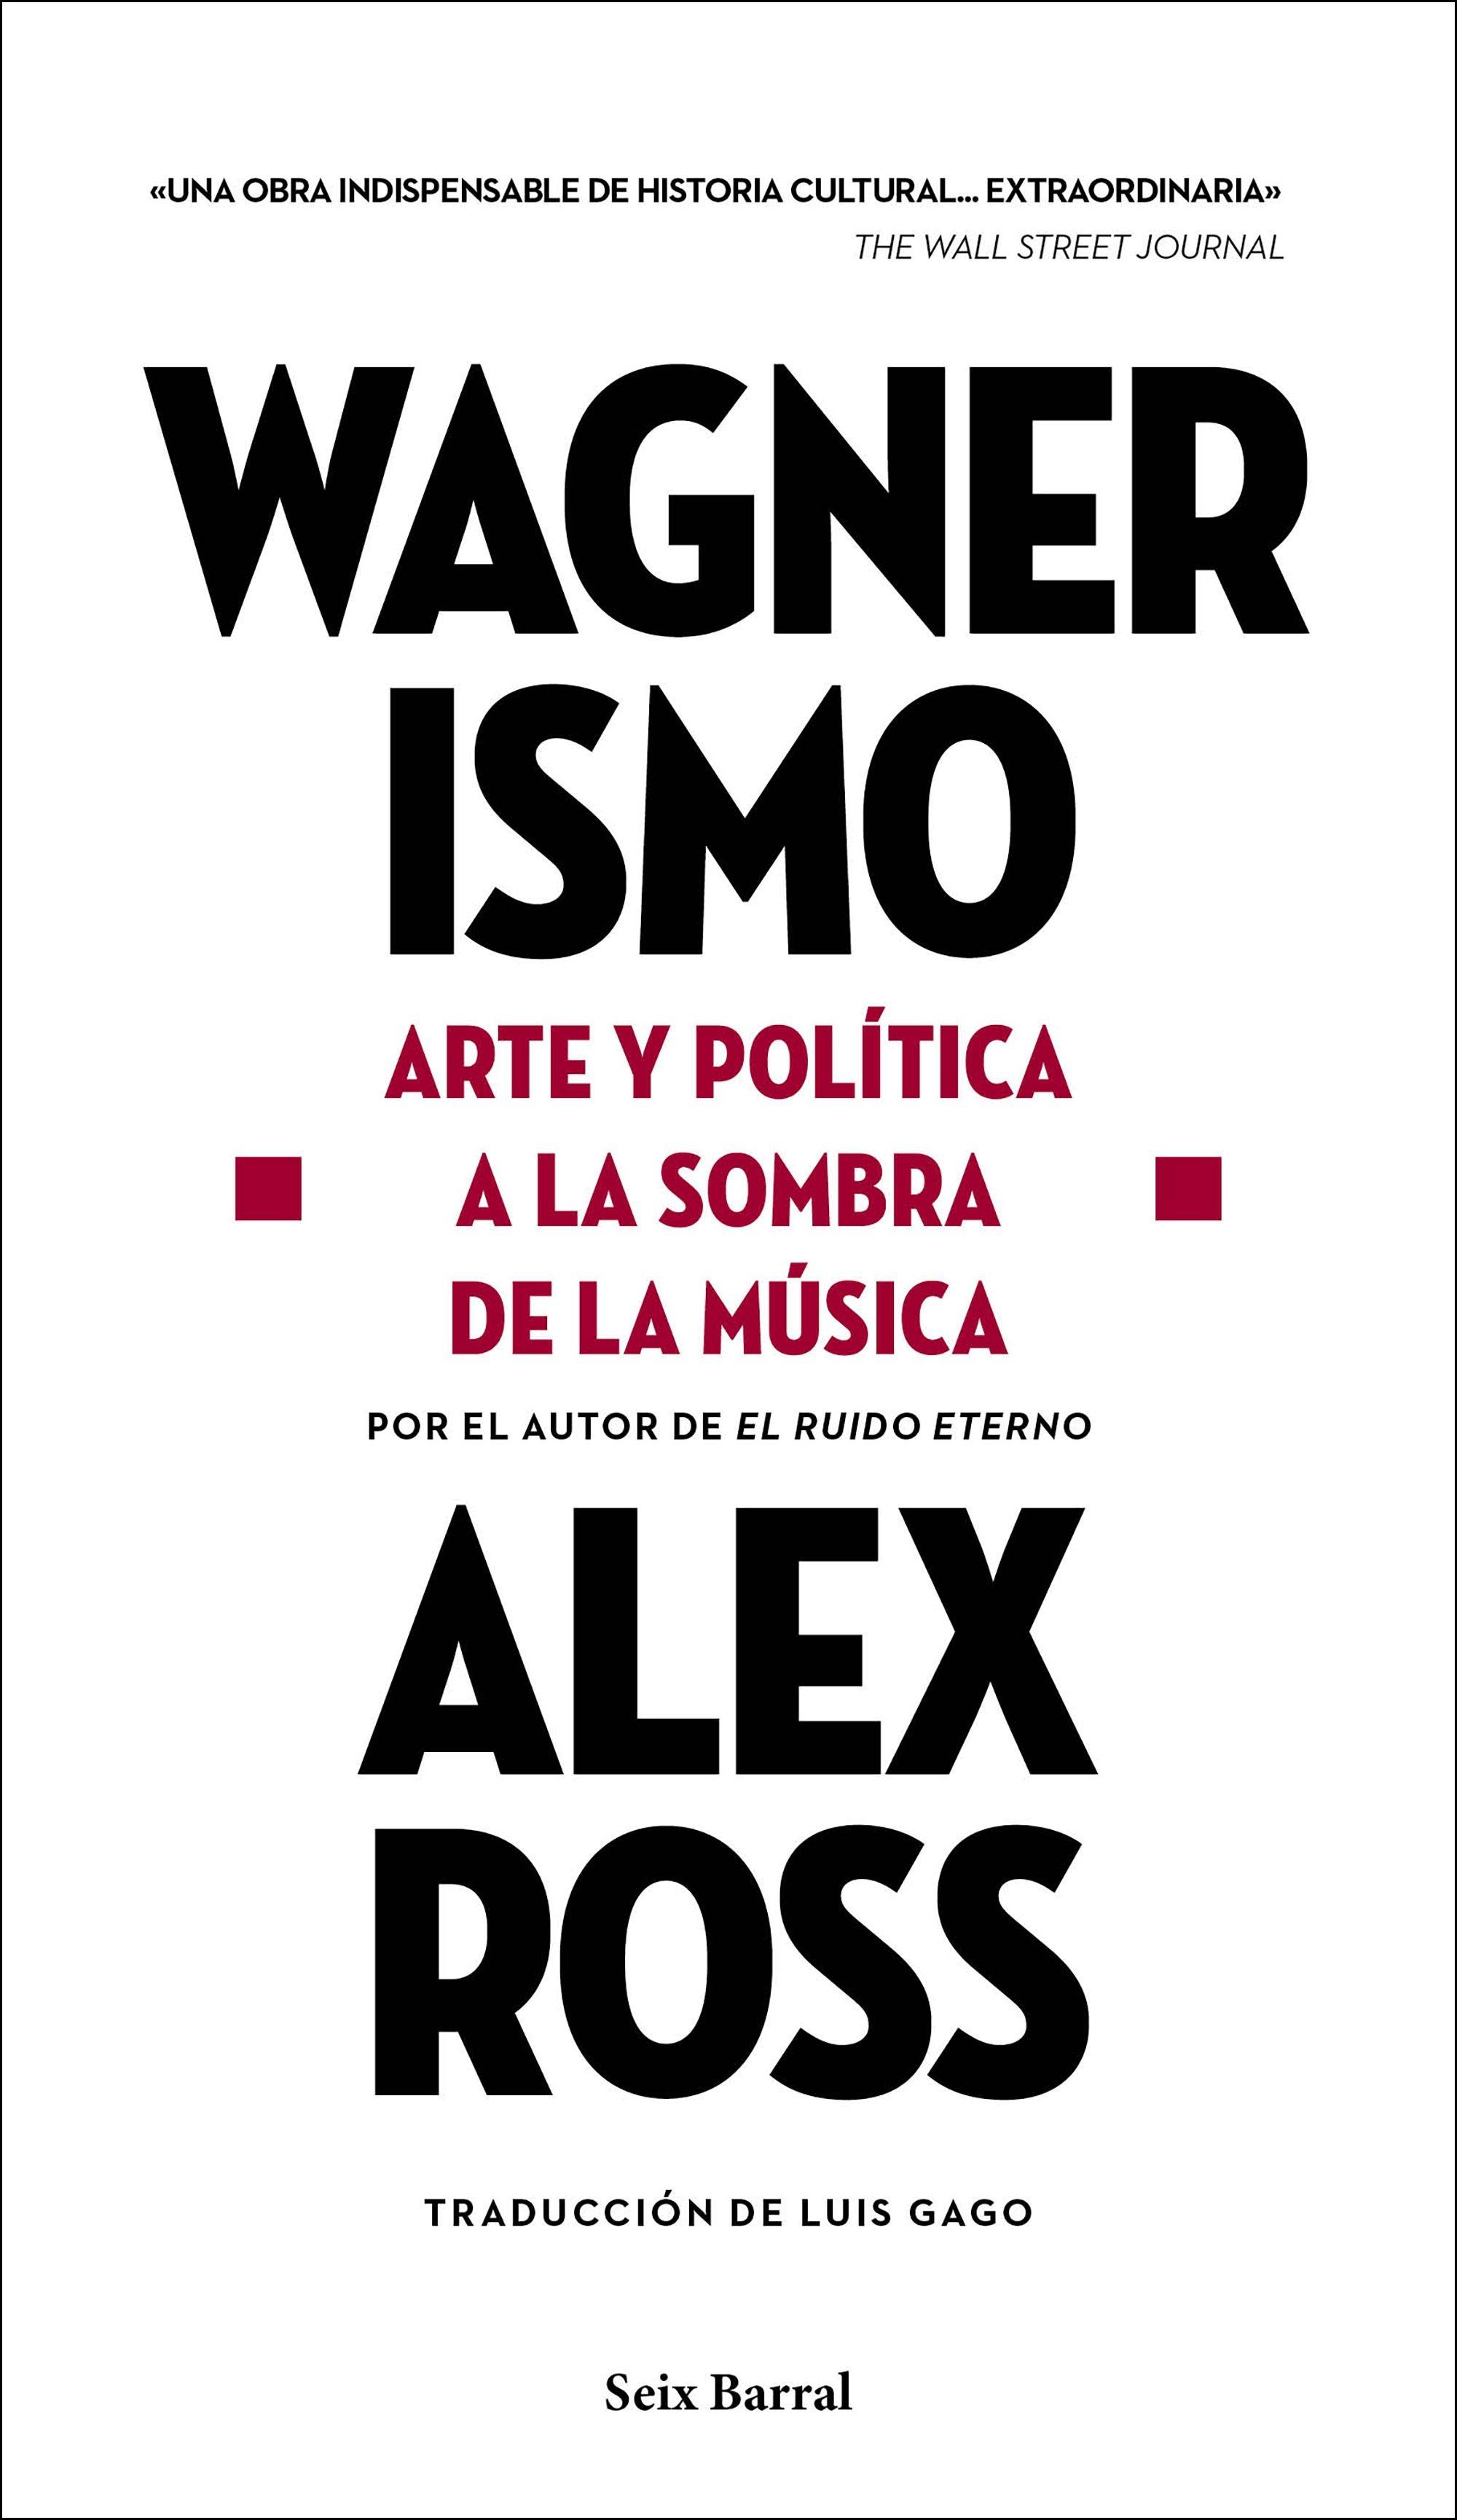 Wagnerismo "Arte y política a la sombra de la música"